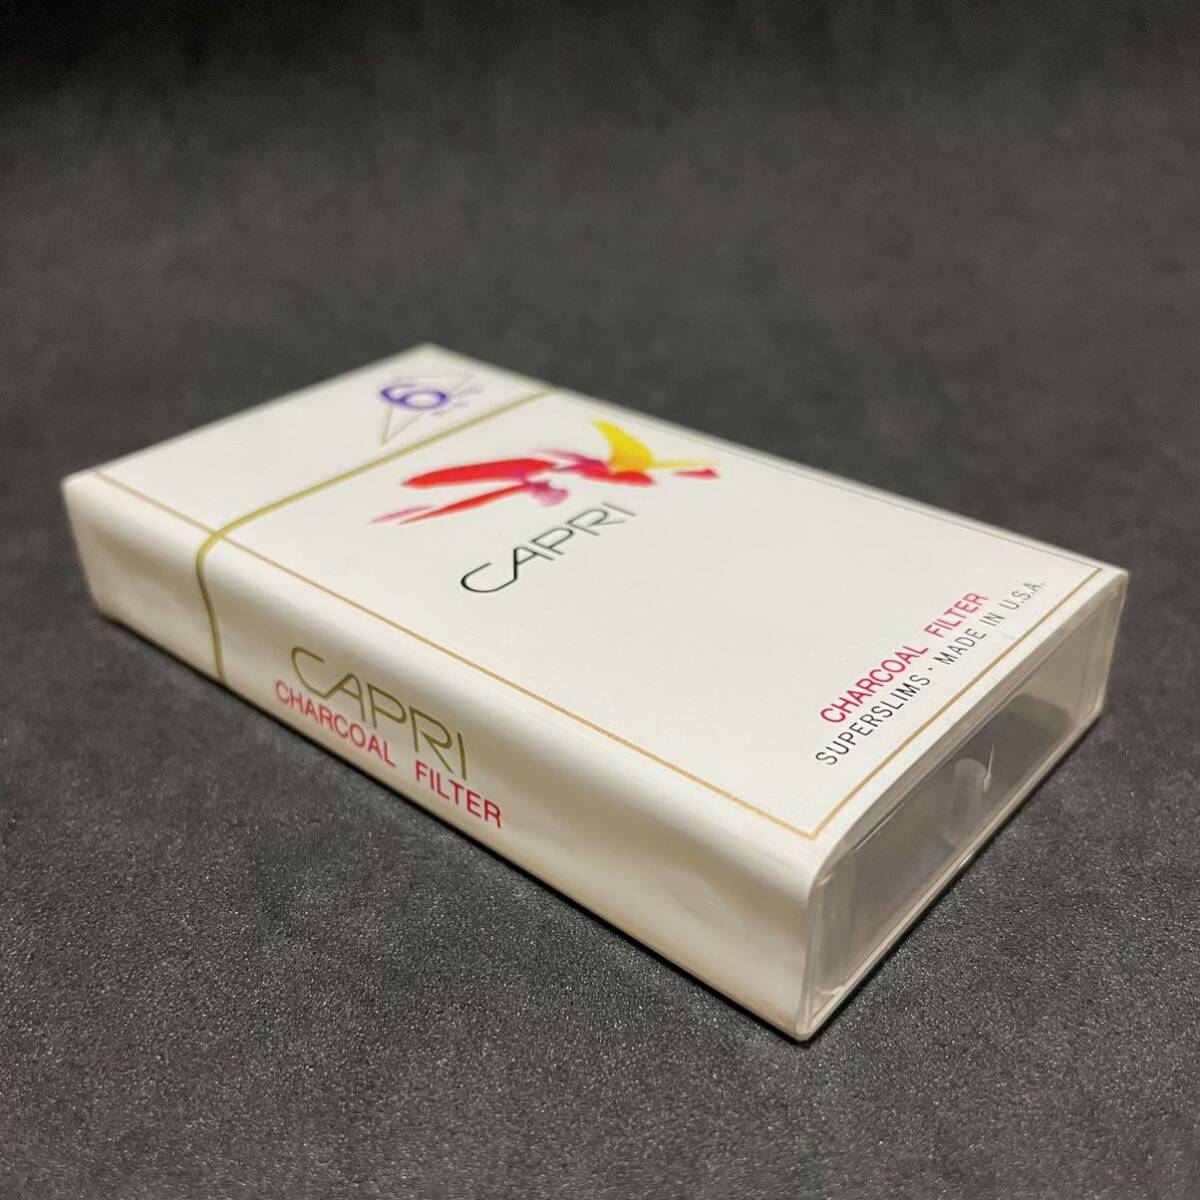 たばこ カプリ CAPRI CHARCOAL FILTER たばこ包装模型 サンプル 見本 ダミーの画像4